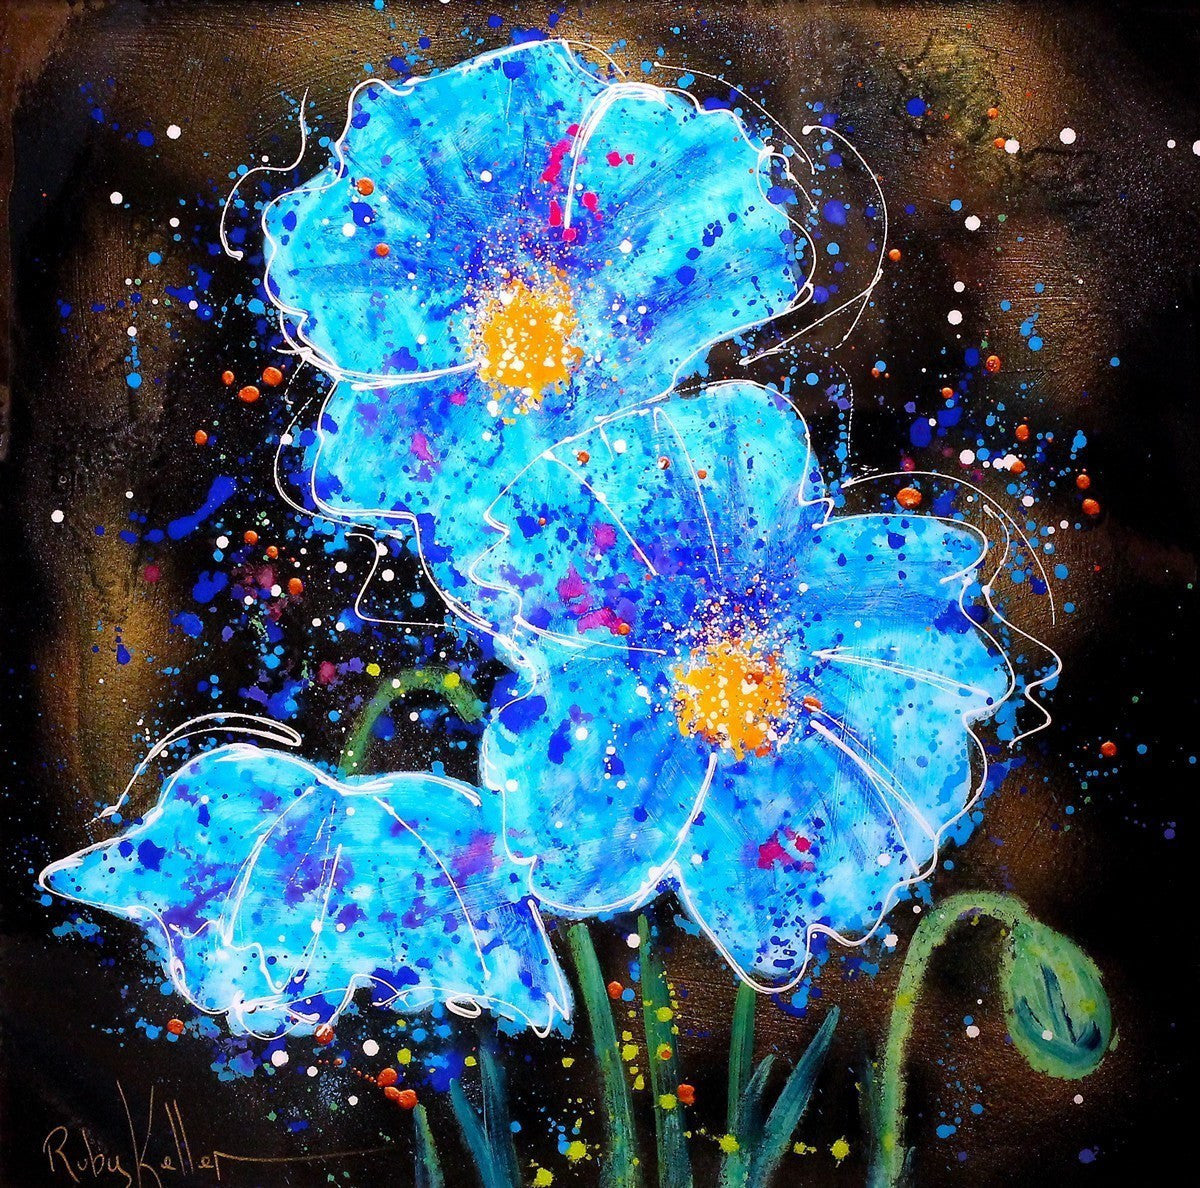 Blue Blooms II - SOLD Ruby Keller